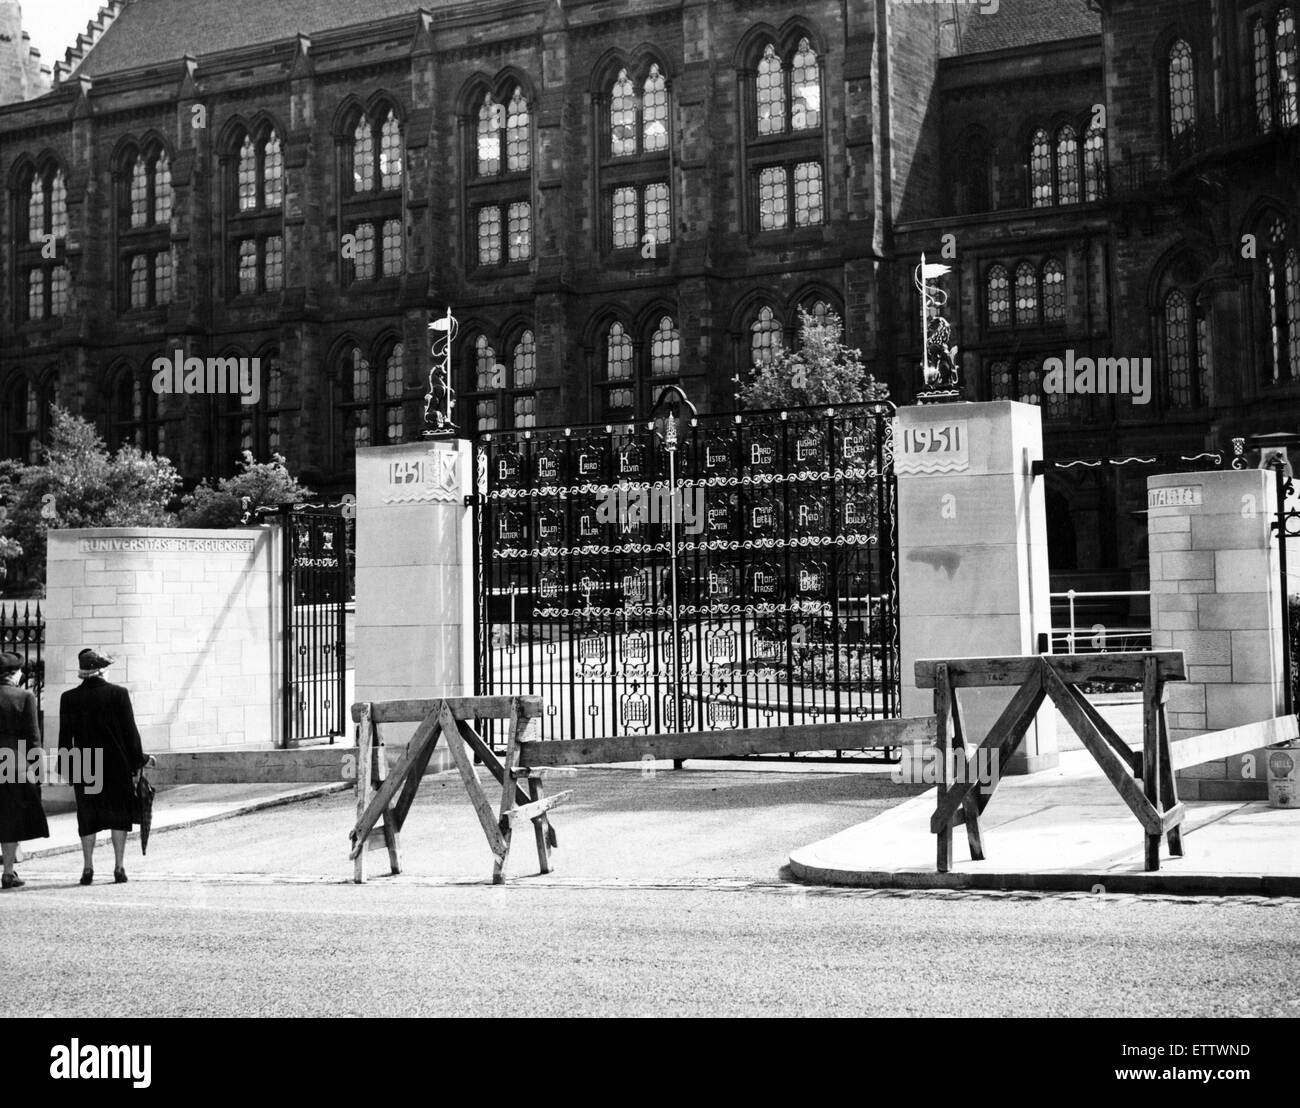 El nuevo monumento Gates en la Universidad de Glasgow. Éstas fueron presentadas a la Universidad por el Consejo General el 18 de junio de 1952, en honor a los veintinueve figuras destacadas de la Universidad los primeros 500 años. Las puertas fueron diseñadas por el arquitecto un gra Foto de stock